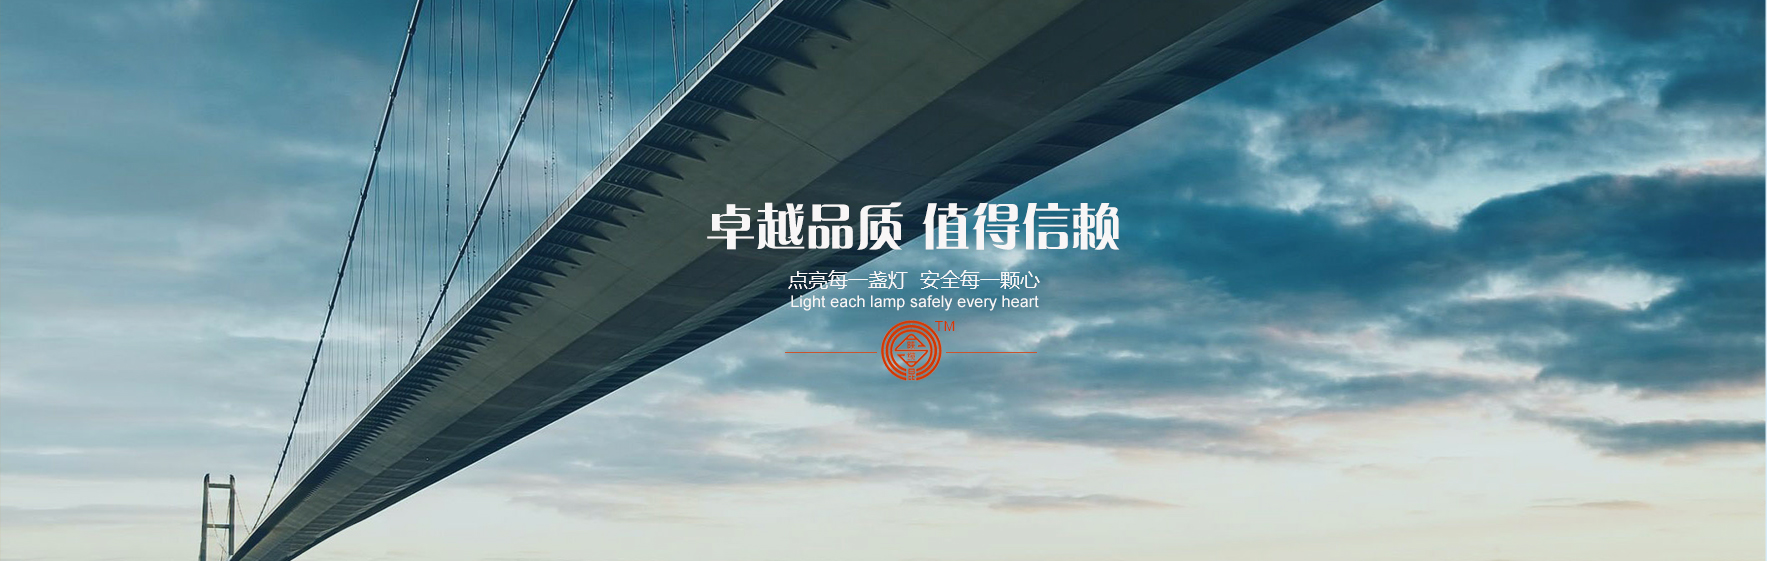 凯发网站·(china)集团 | 科技改变生活_产品92